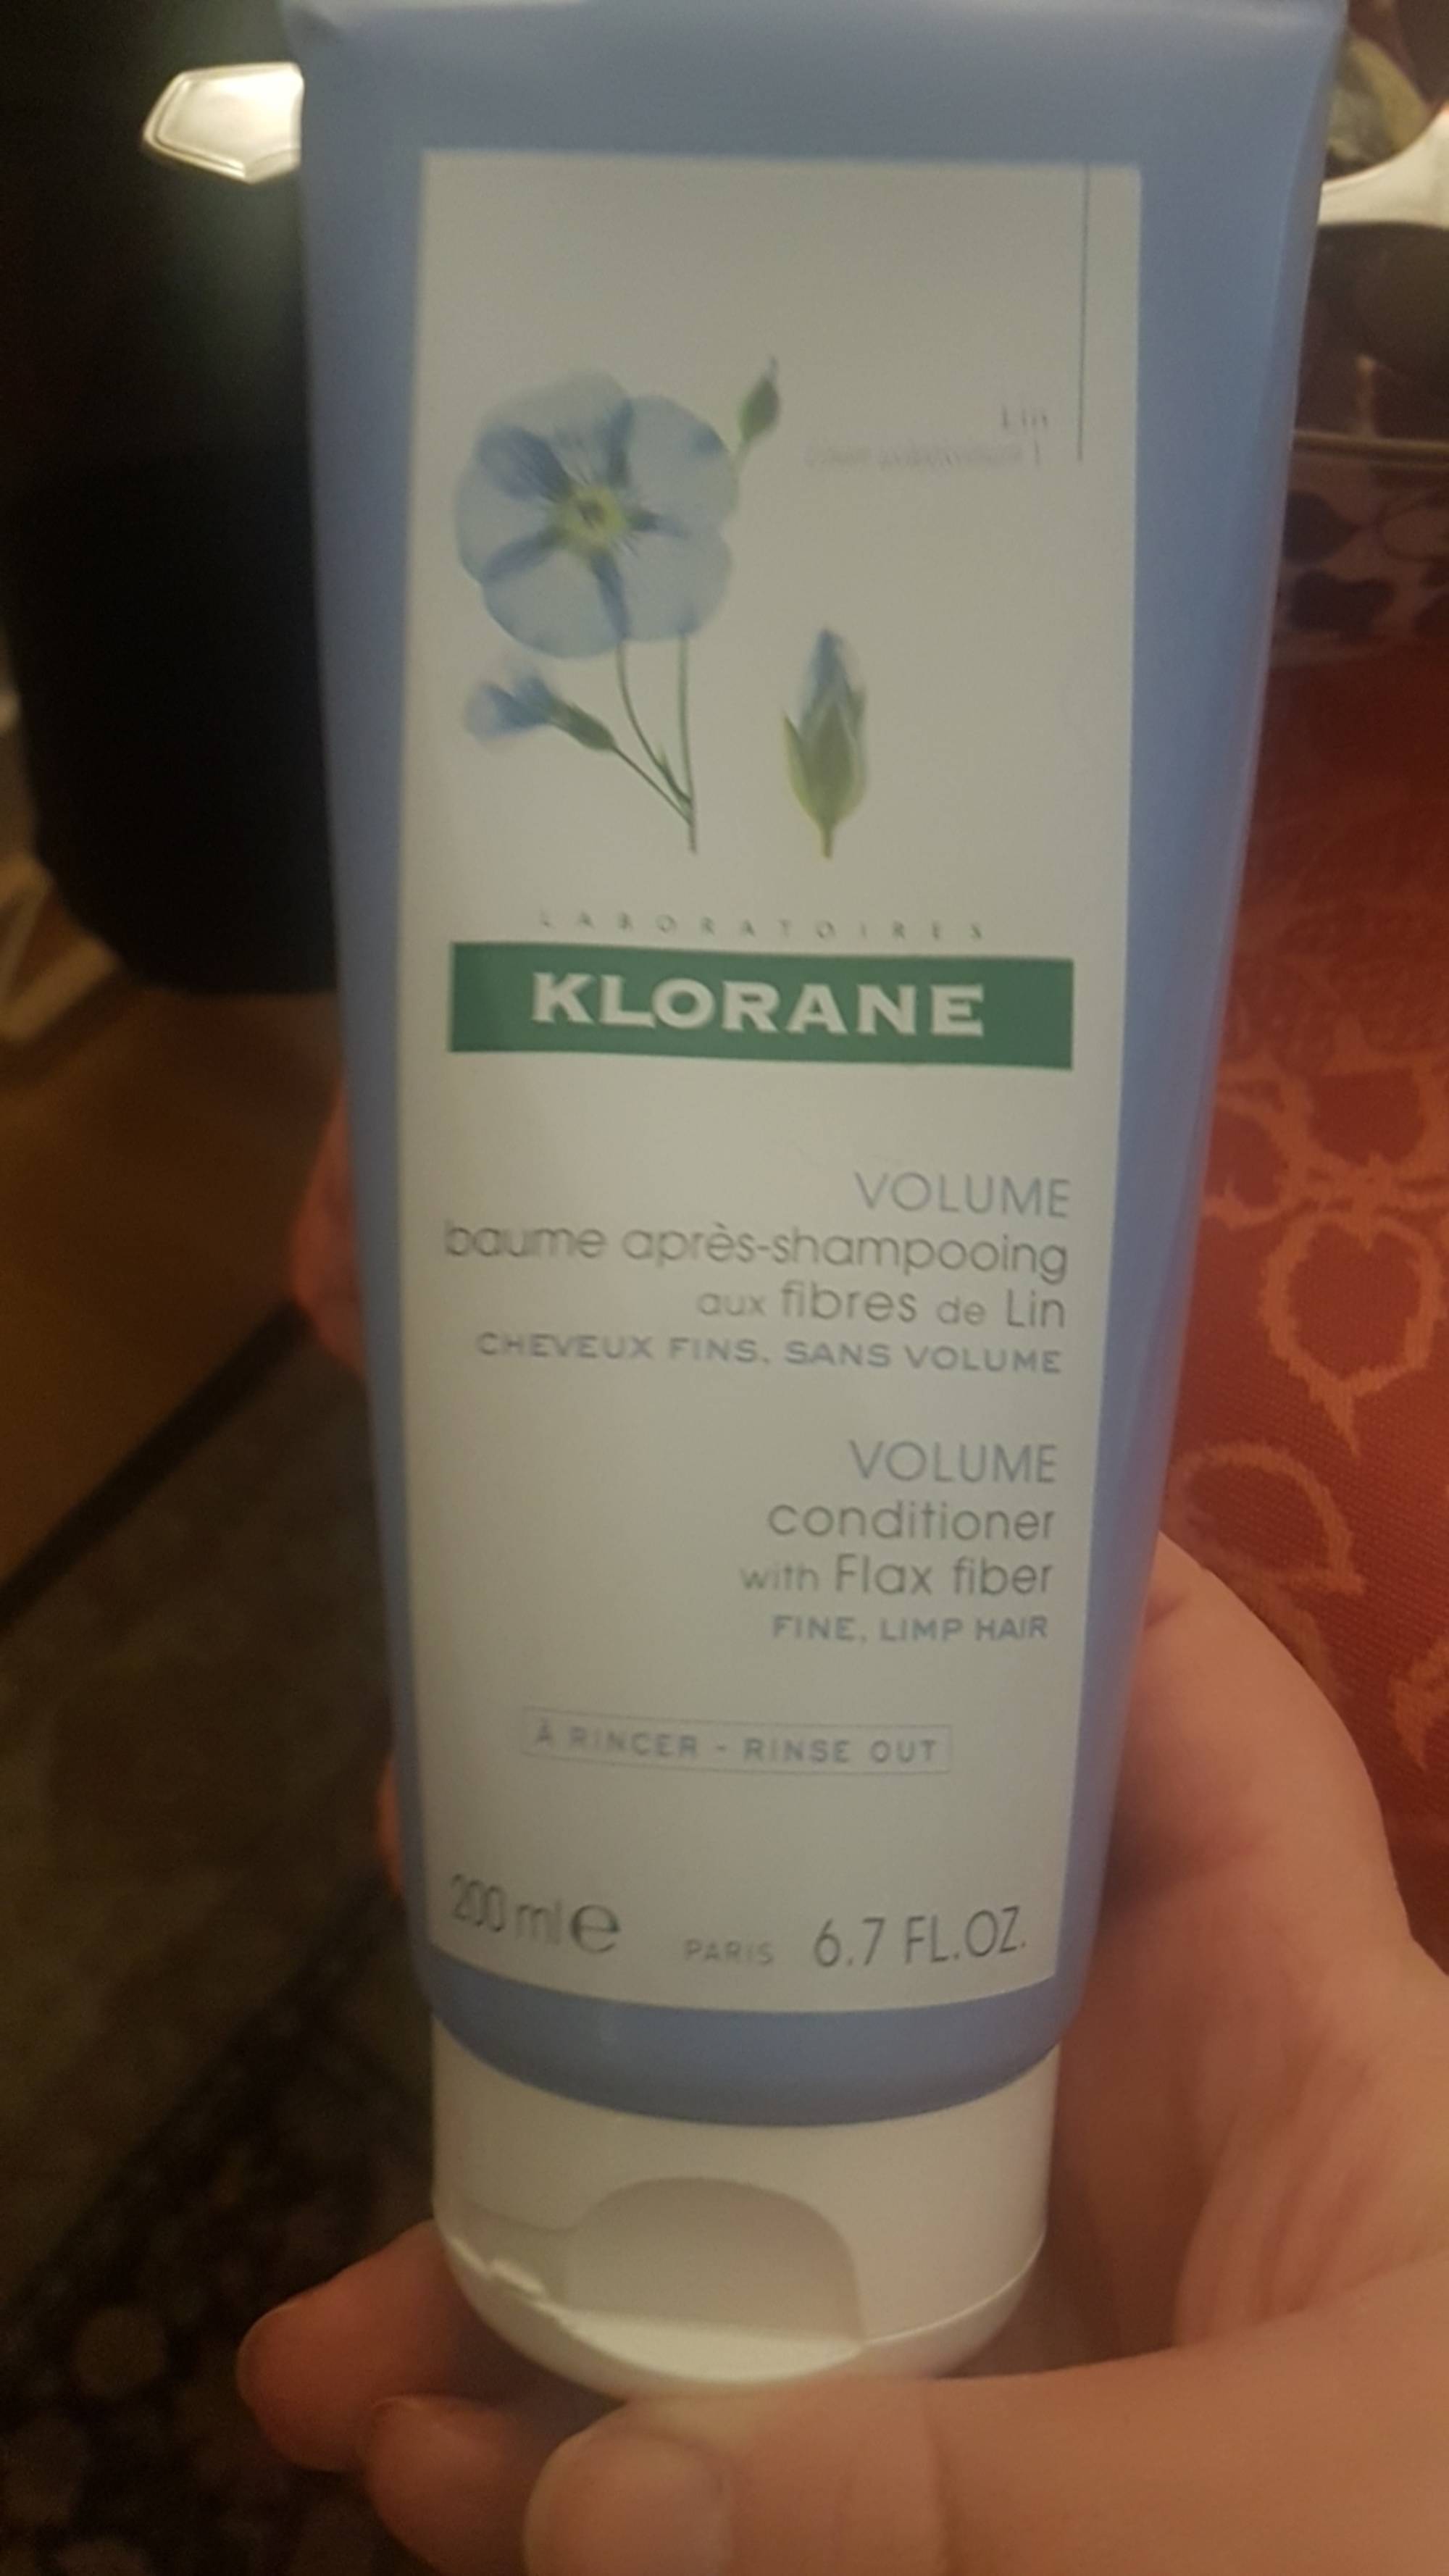 KLORANE - Baume après-shampooing aux fibres de Lin